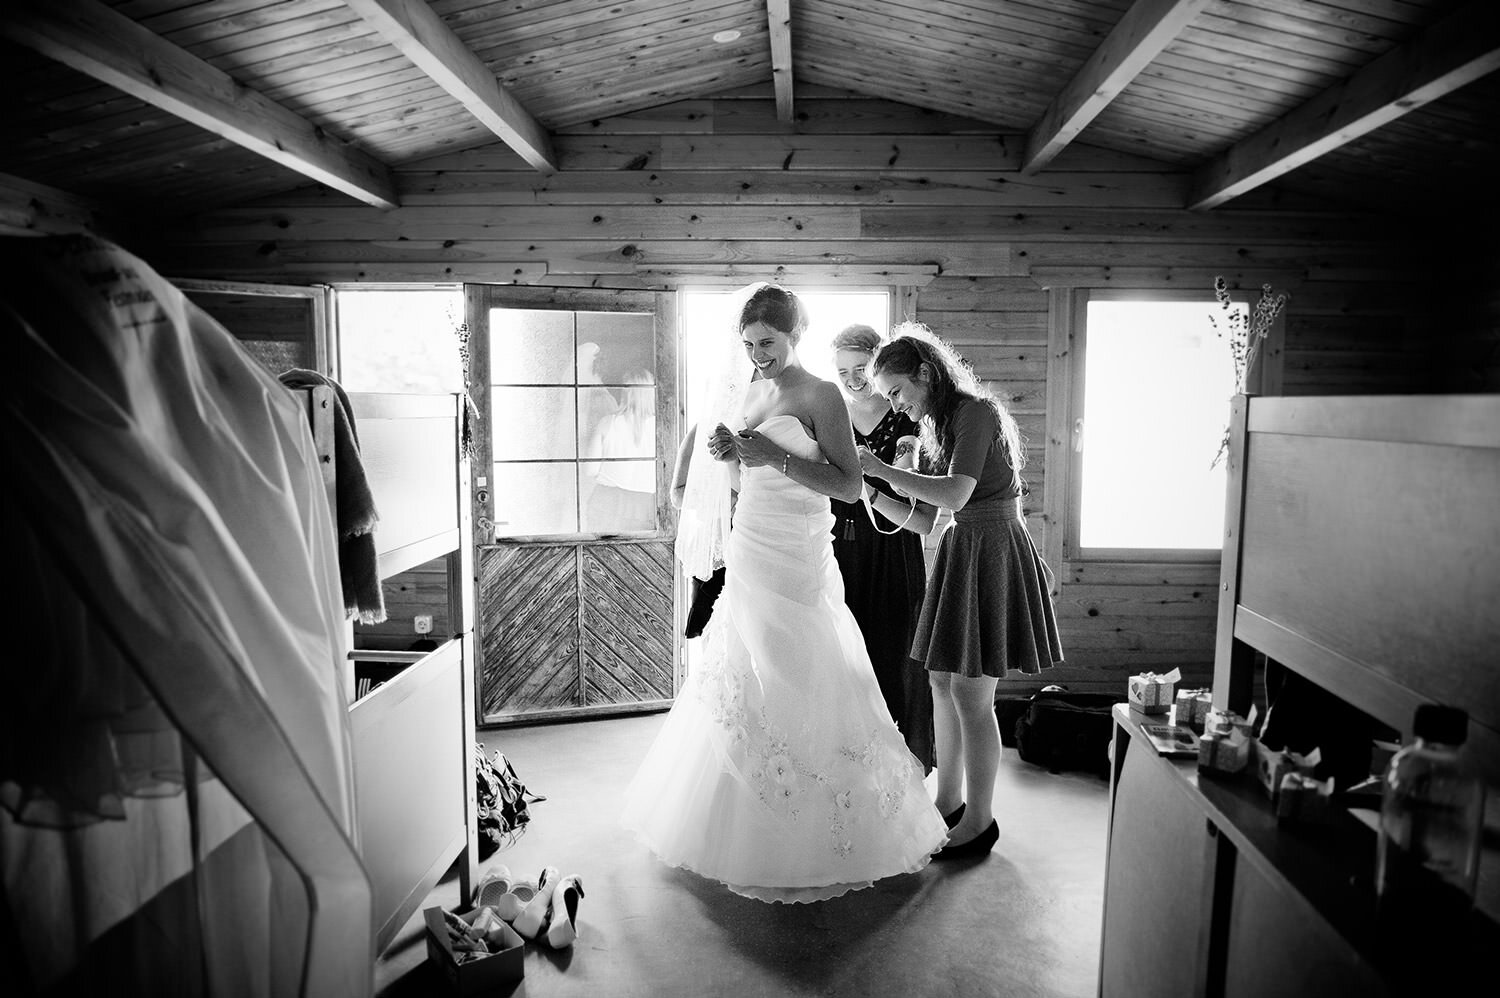 Brautjungfer hilft der Braut bei den Vorbereitungen